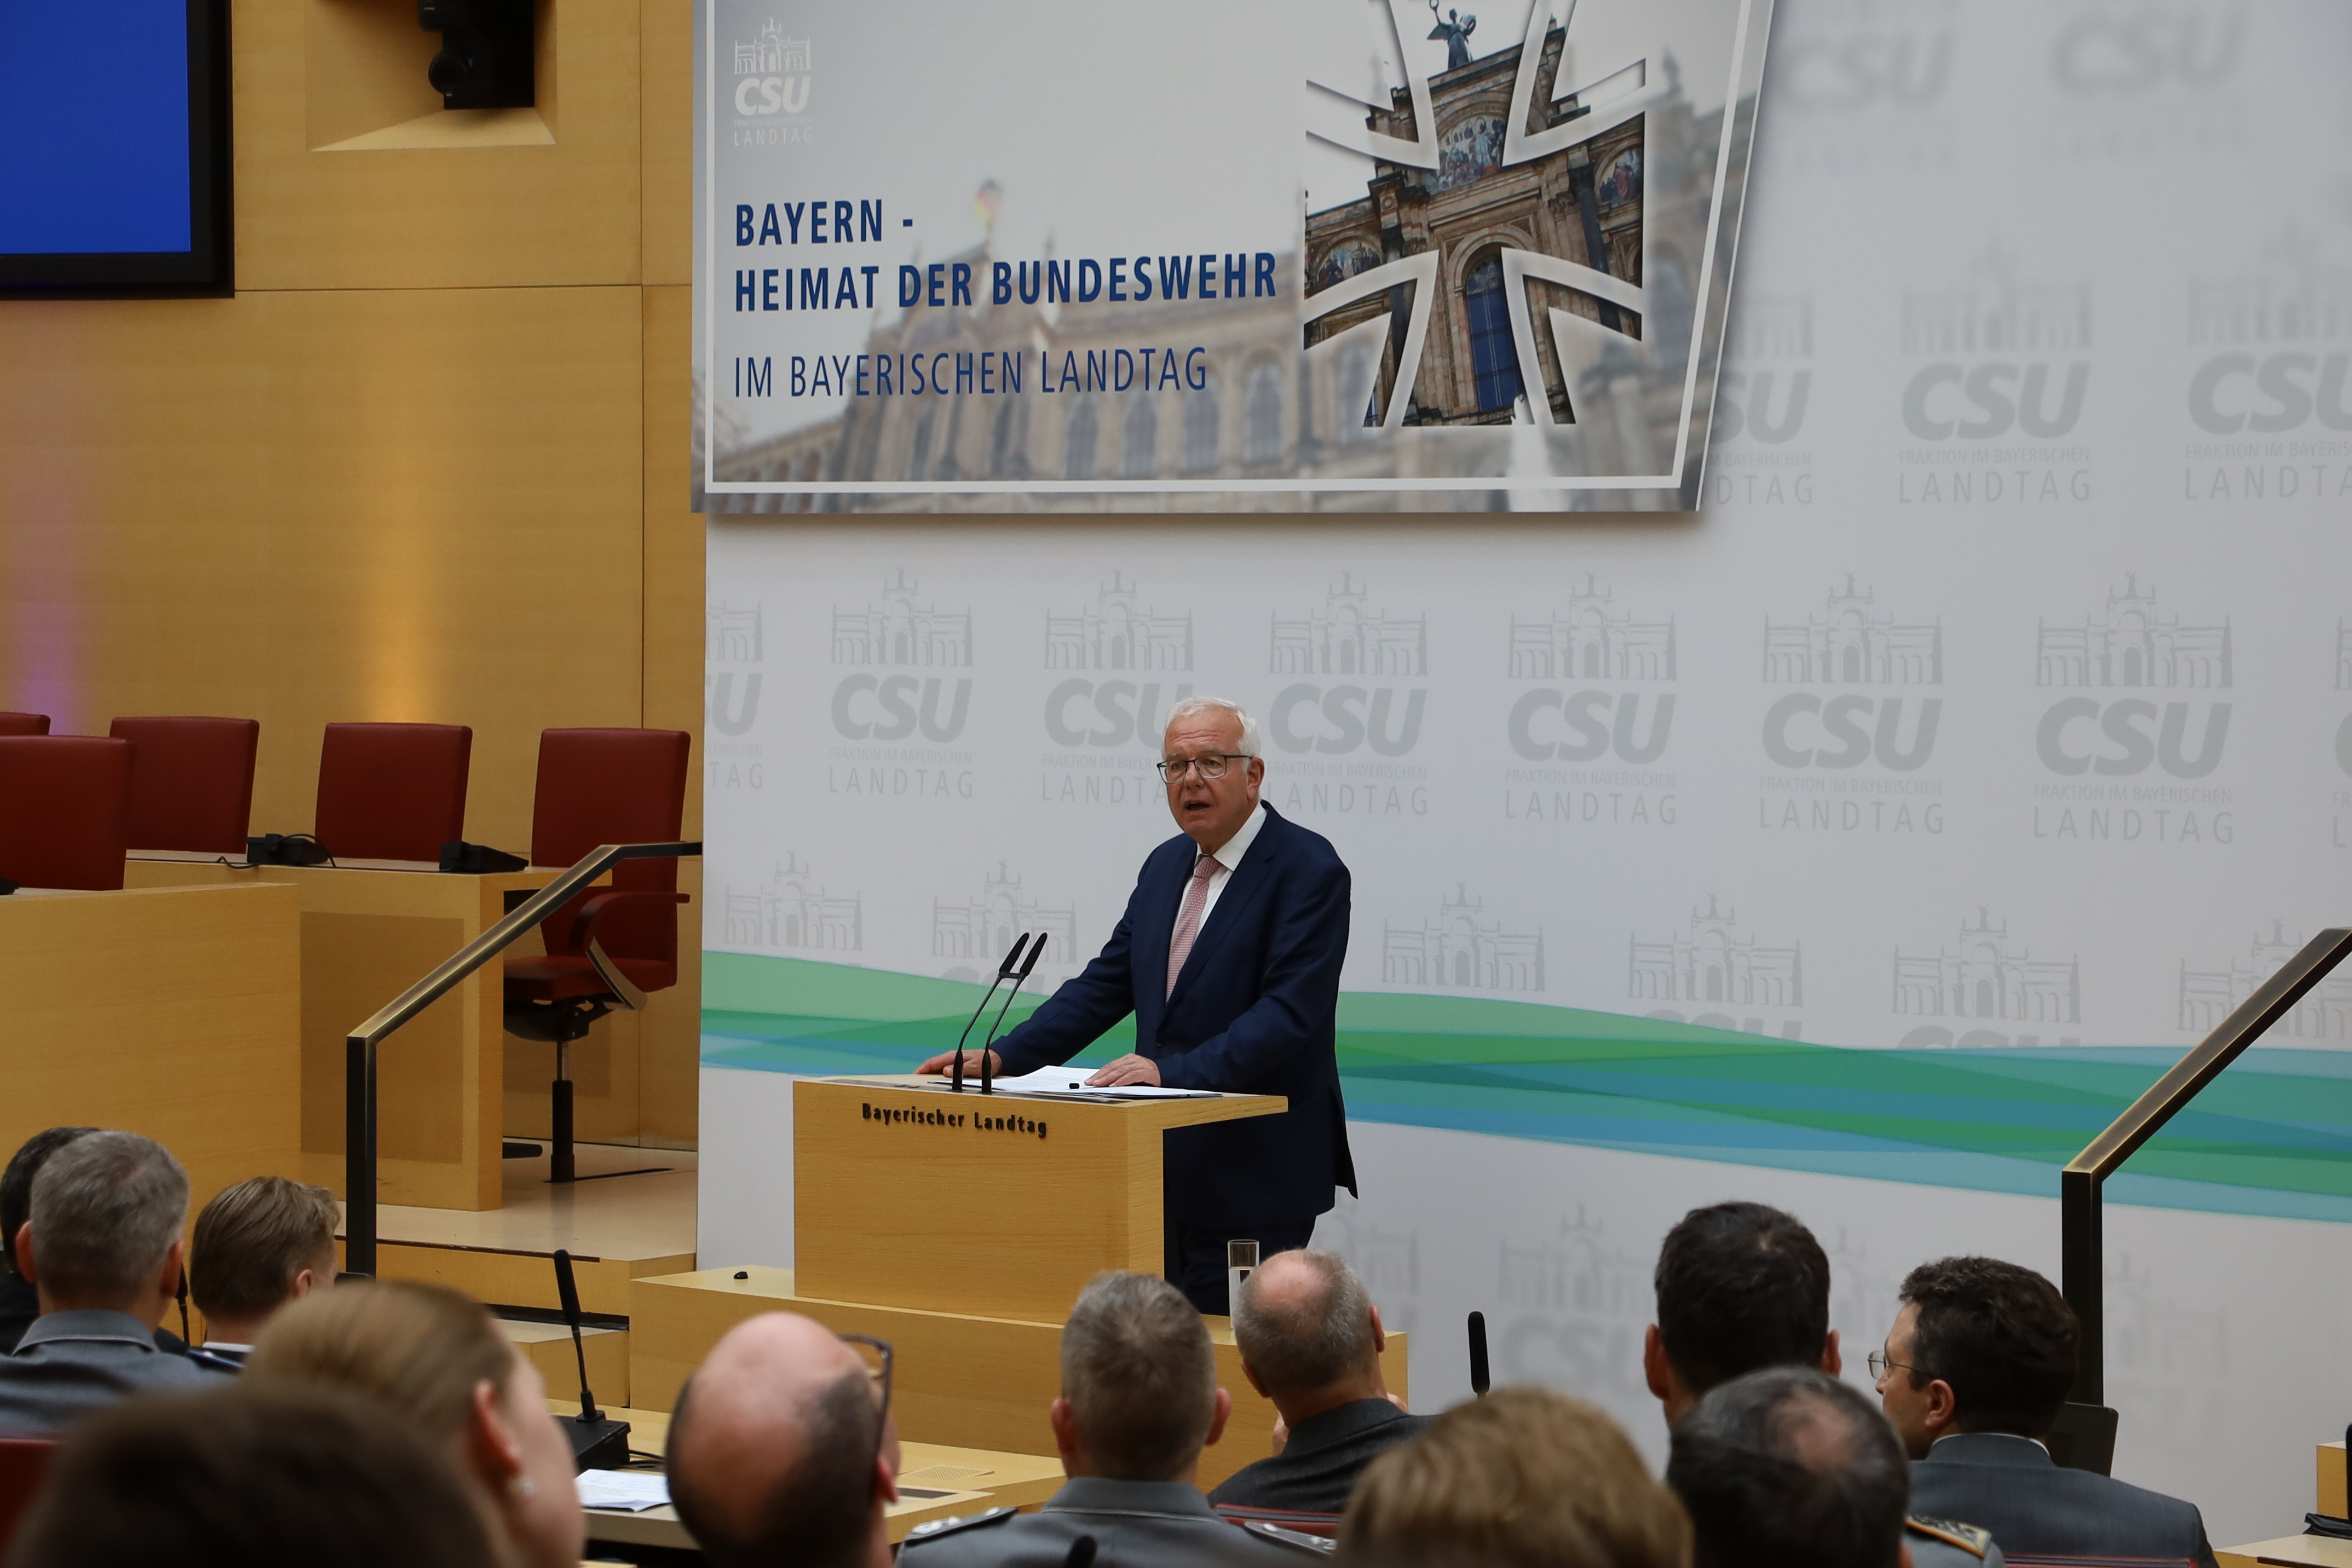 Bayern ist Bundeswehrland – und wir sind stolz darauf. Das war am 19. April die Botschaft des Soldatenempfangs der CSU-Landtagsfraktion unter dem Motto 